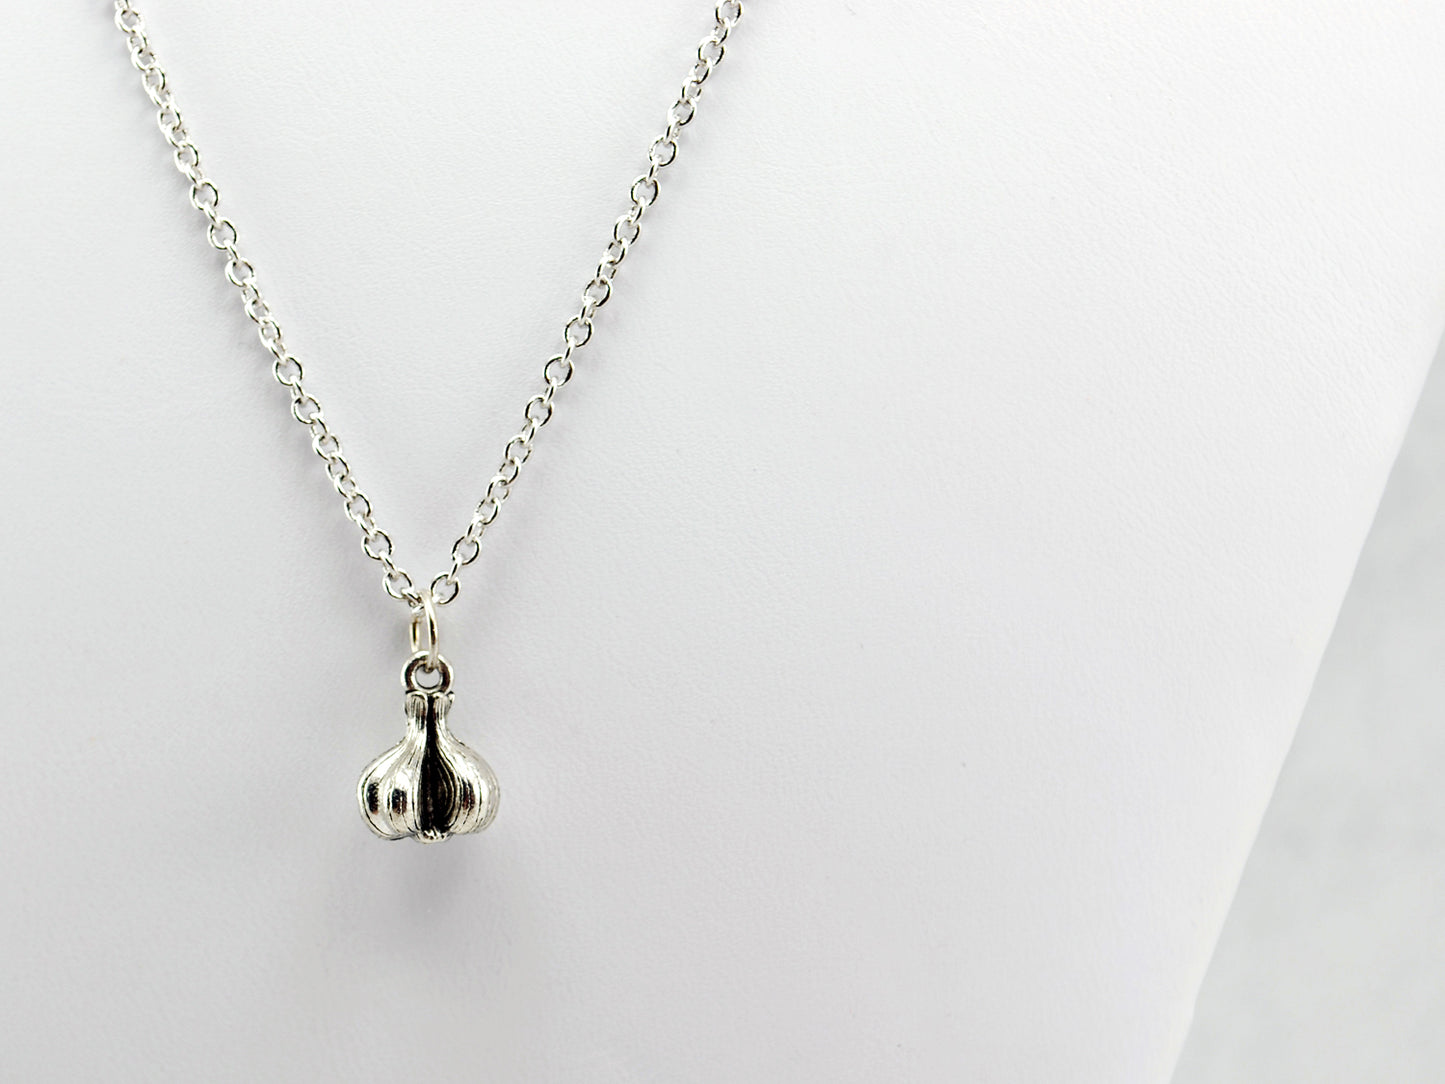 Garlic Necklace in Silver